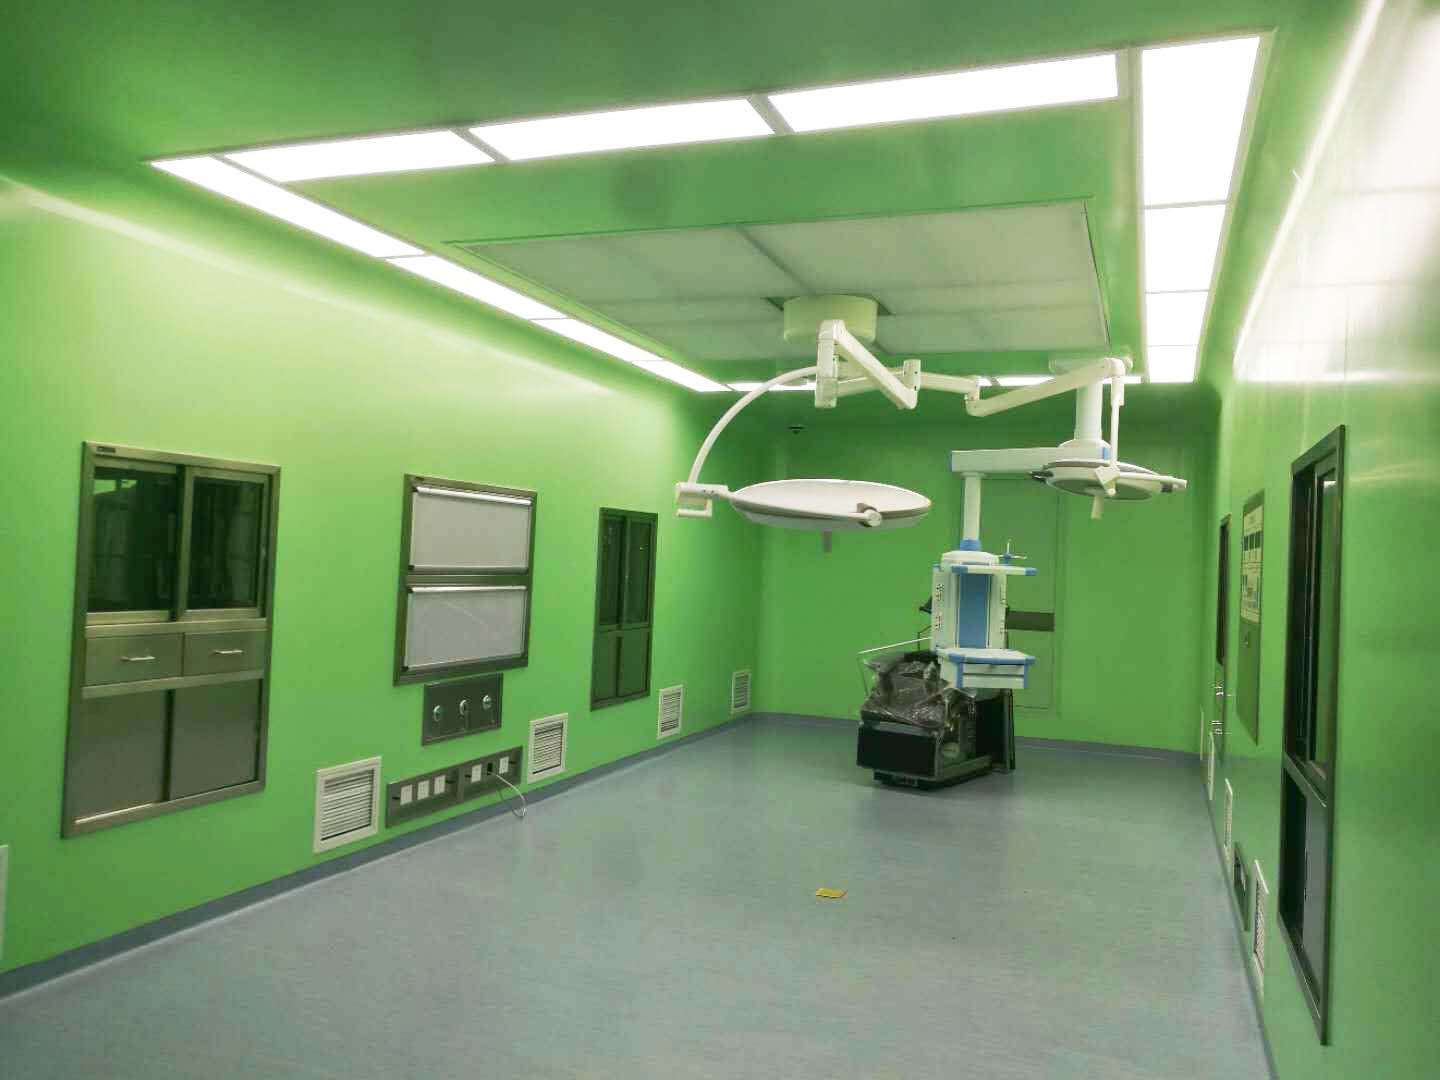 હોસ્પિટલ ઓપરેટિંગ રૂમ 2